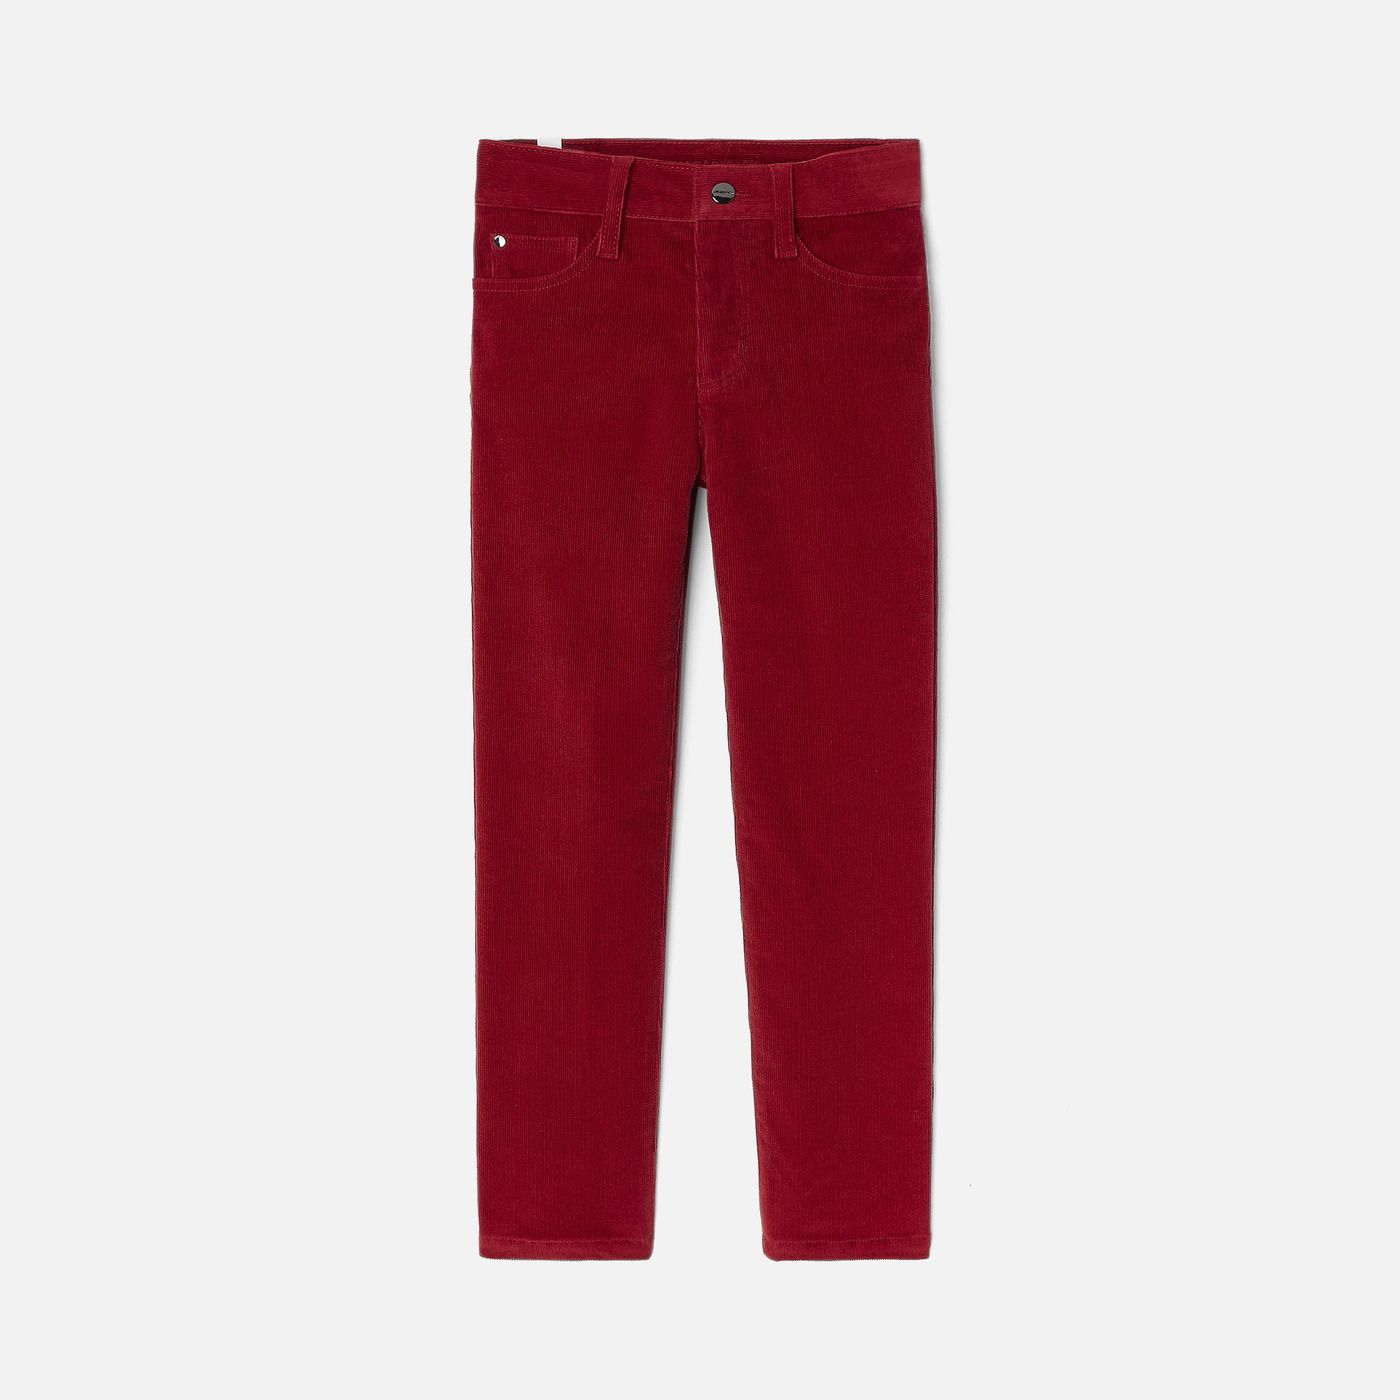 Boy velvet pants - Jacadi | Jacadi (US)